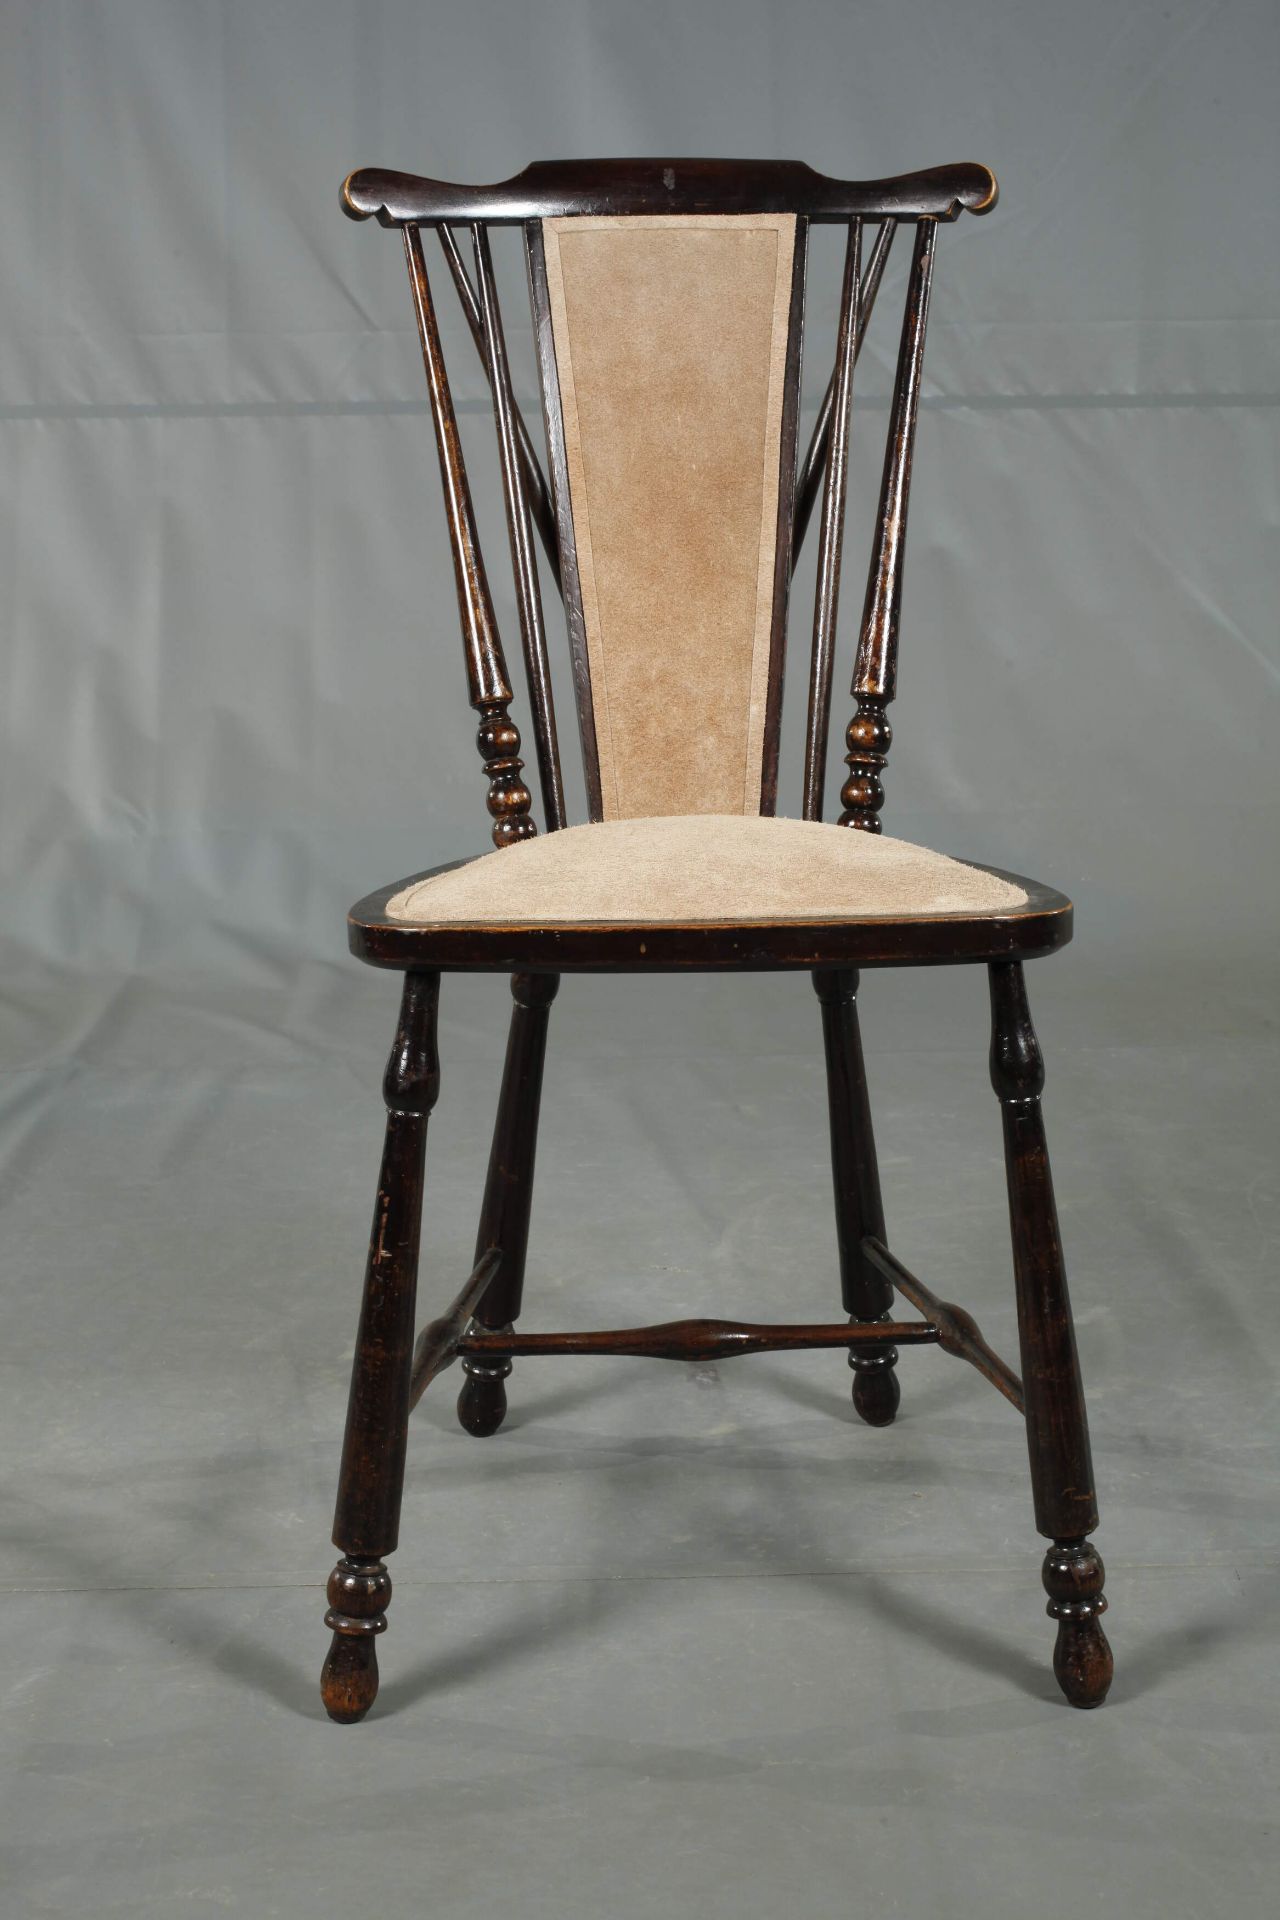 Fan-Back Windsor Chair - Image 2 of 6